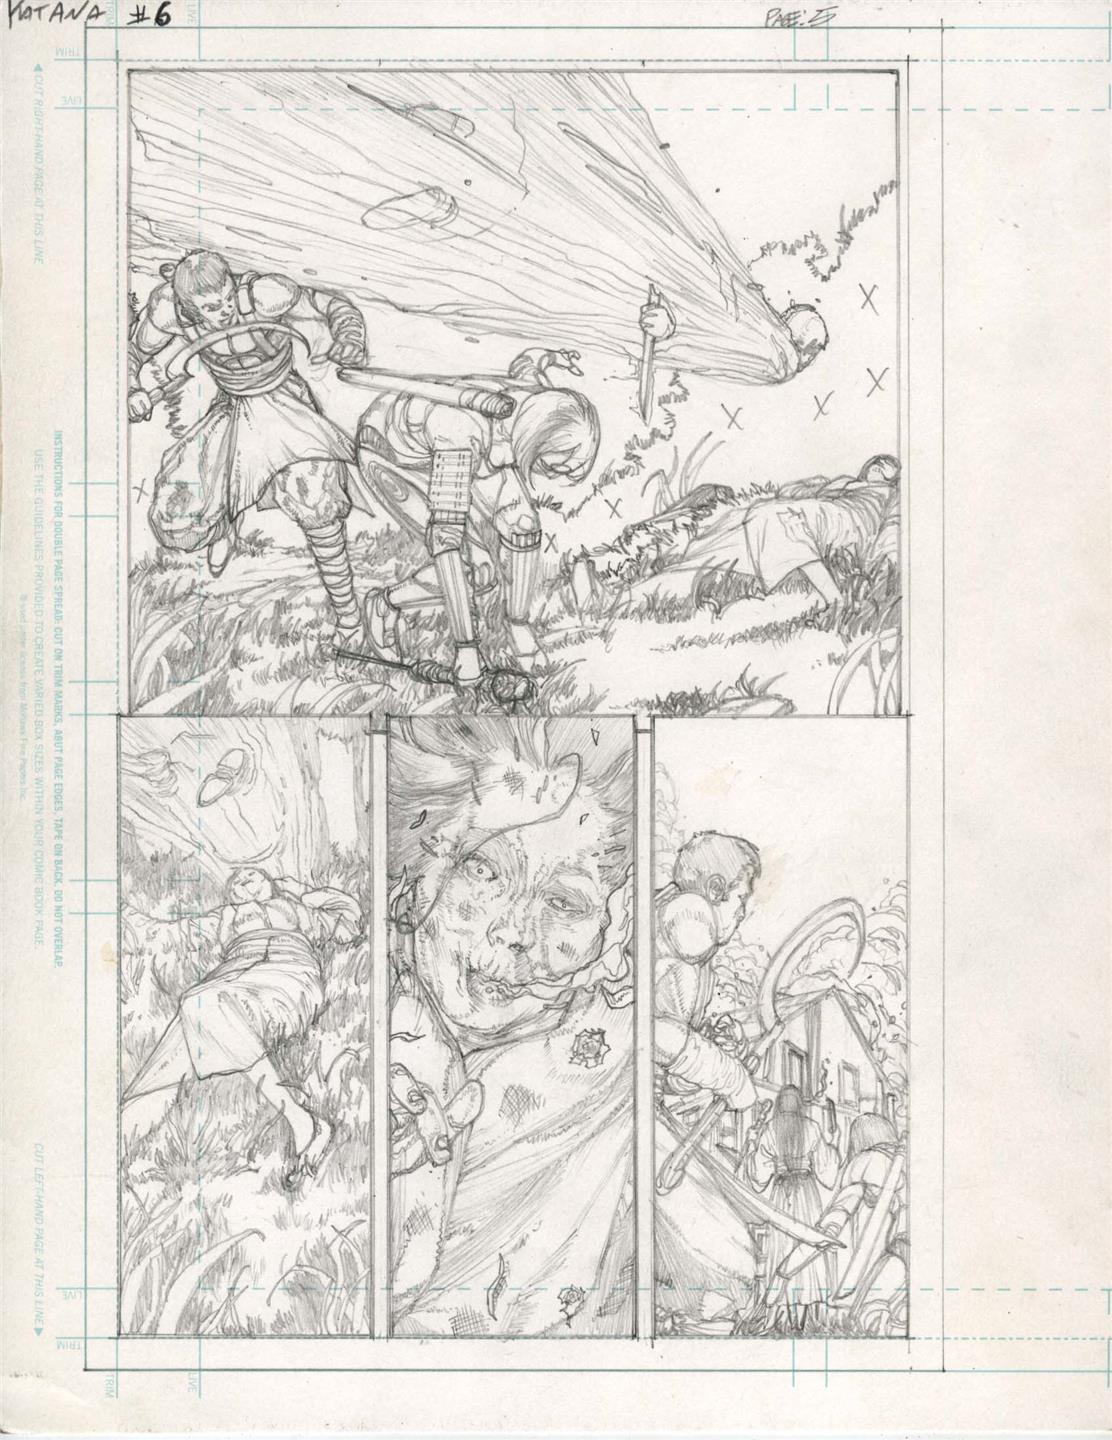 Katana #6 pg 5 DC New 52-Justice League Original Penciled art by ALEX SANCHEZ